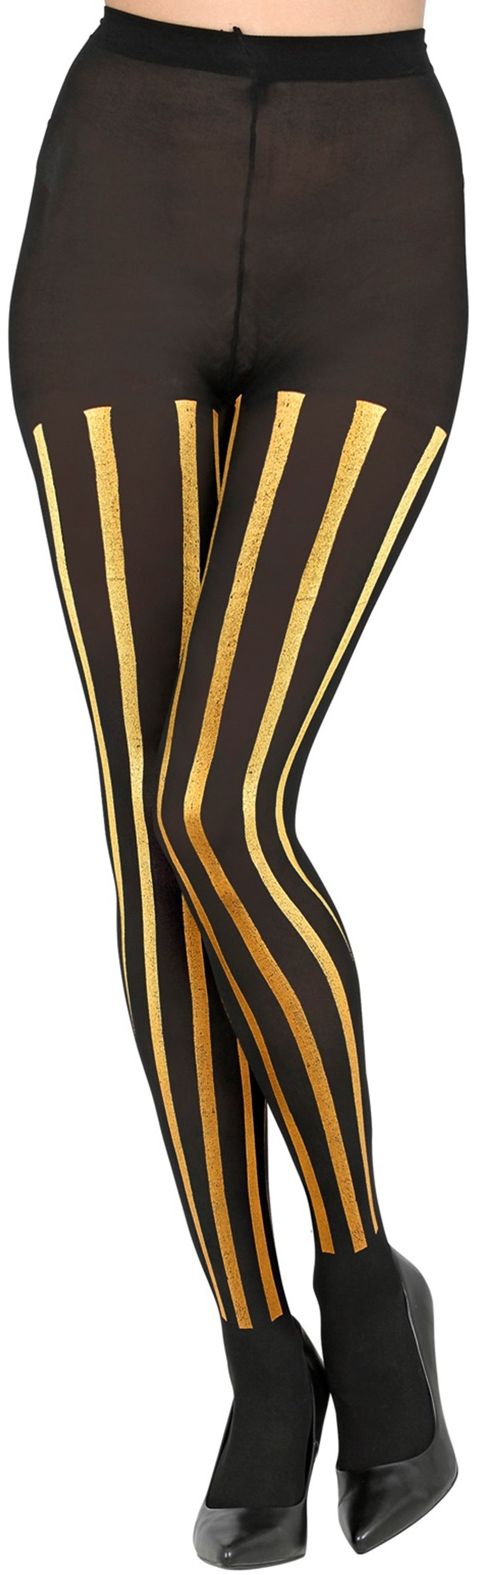 Zwarte panty met gouden strepen